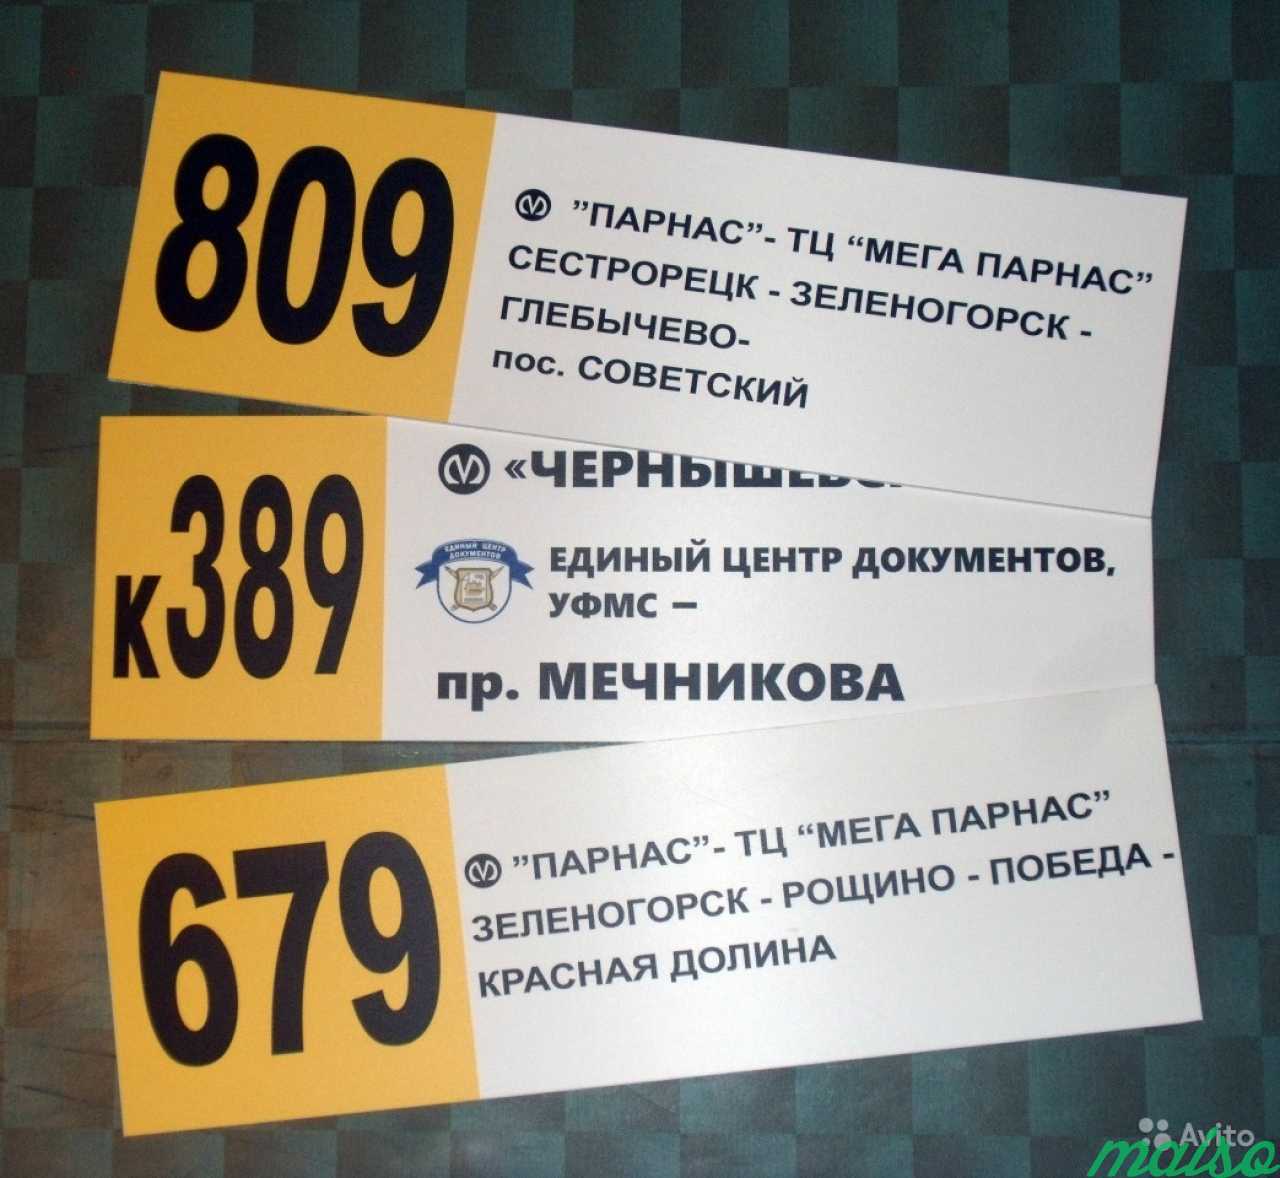 Рекламные вывески, таблички, наклейки, баннеры в Санкт-Петербурге. Фото 9